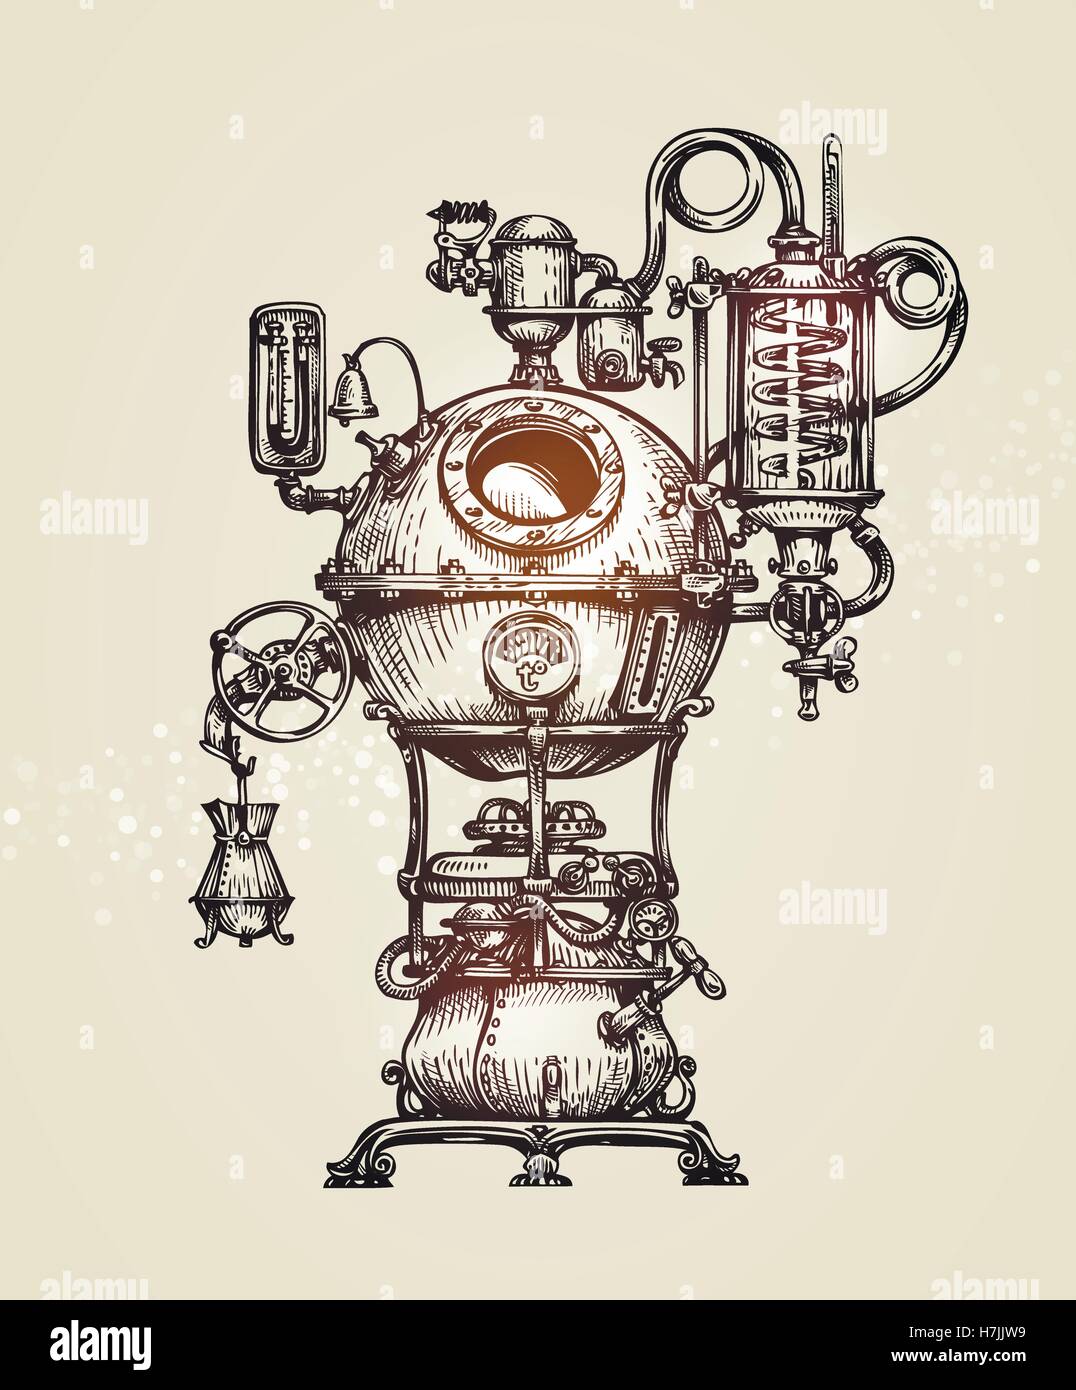 Appareil de distillation vintage. Croquis d'illustration vectorielle moonshine Illustration de Vecteur